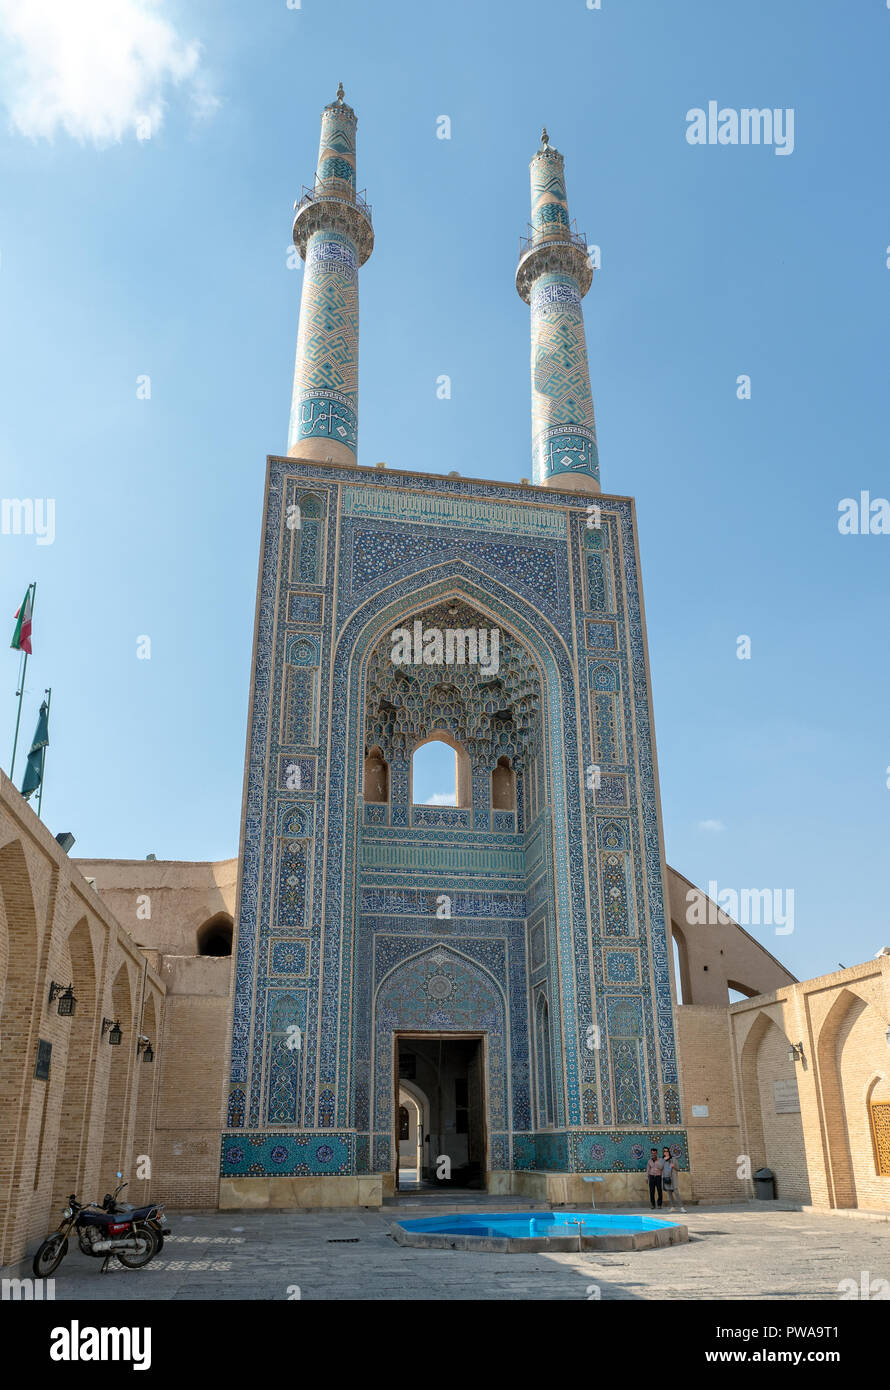 Façade de la mosquée Jameh de Yazd, Iran. Il a le plus grand portail de toutes les mosquées de l'Iran Banque D'Images